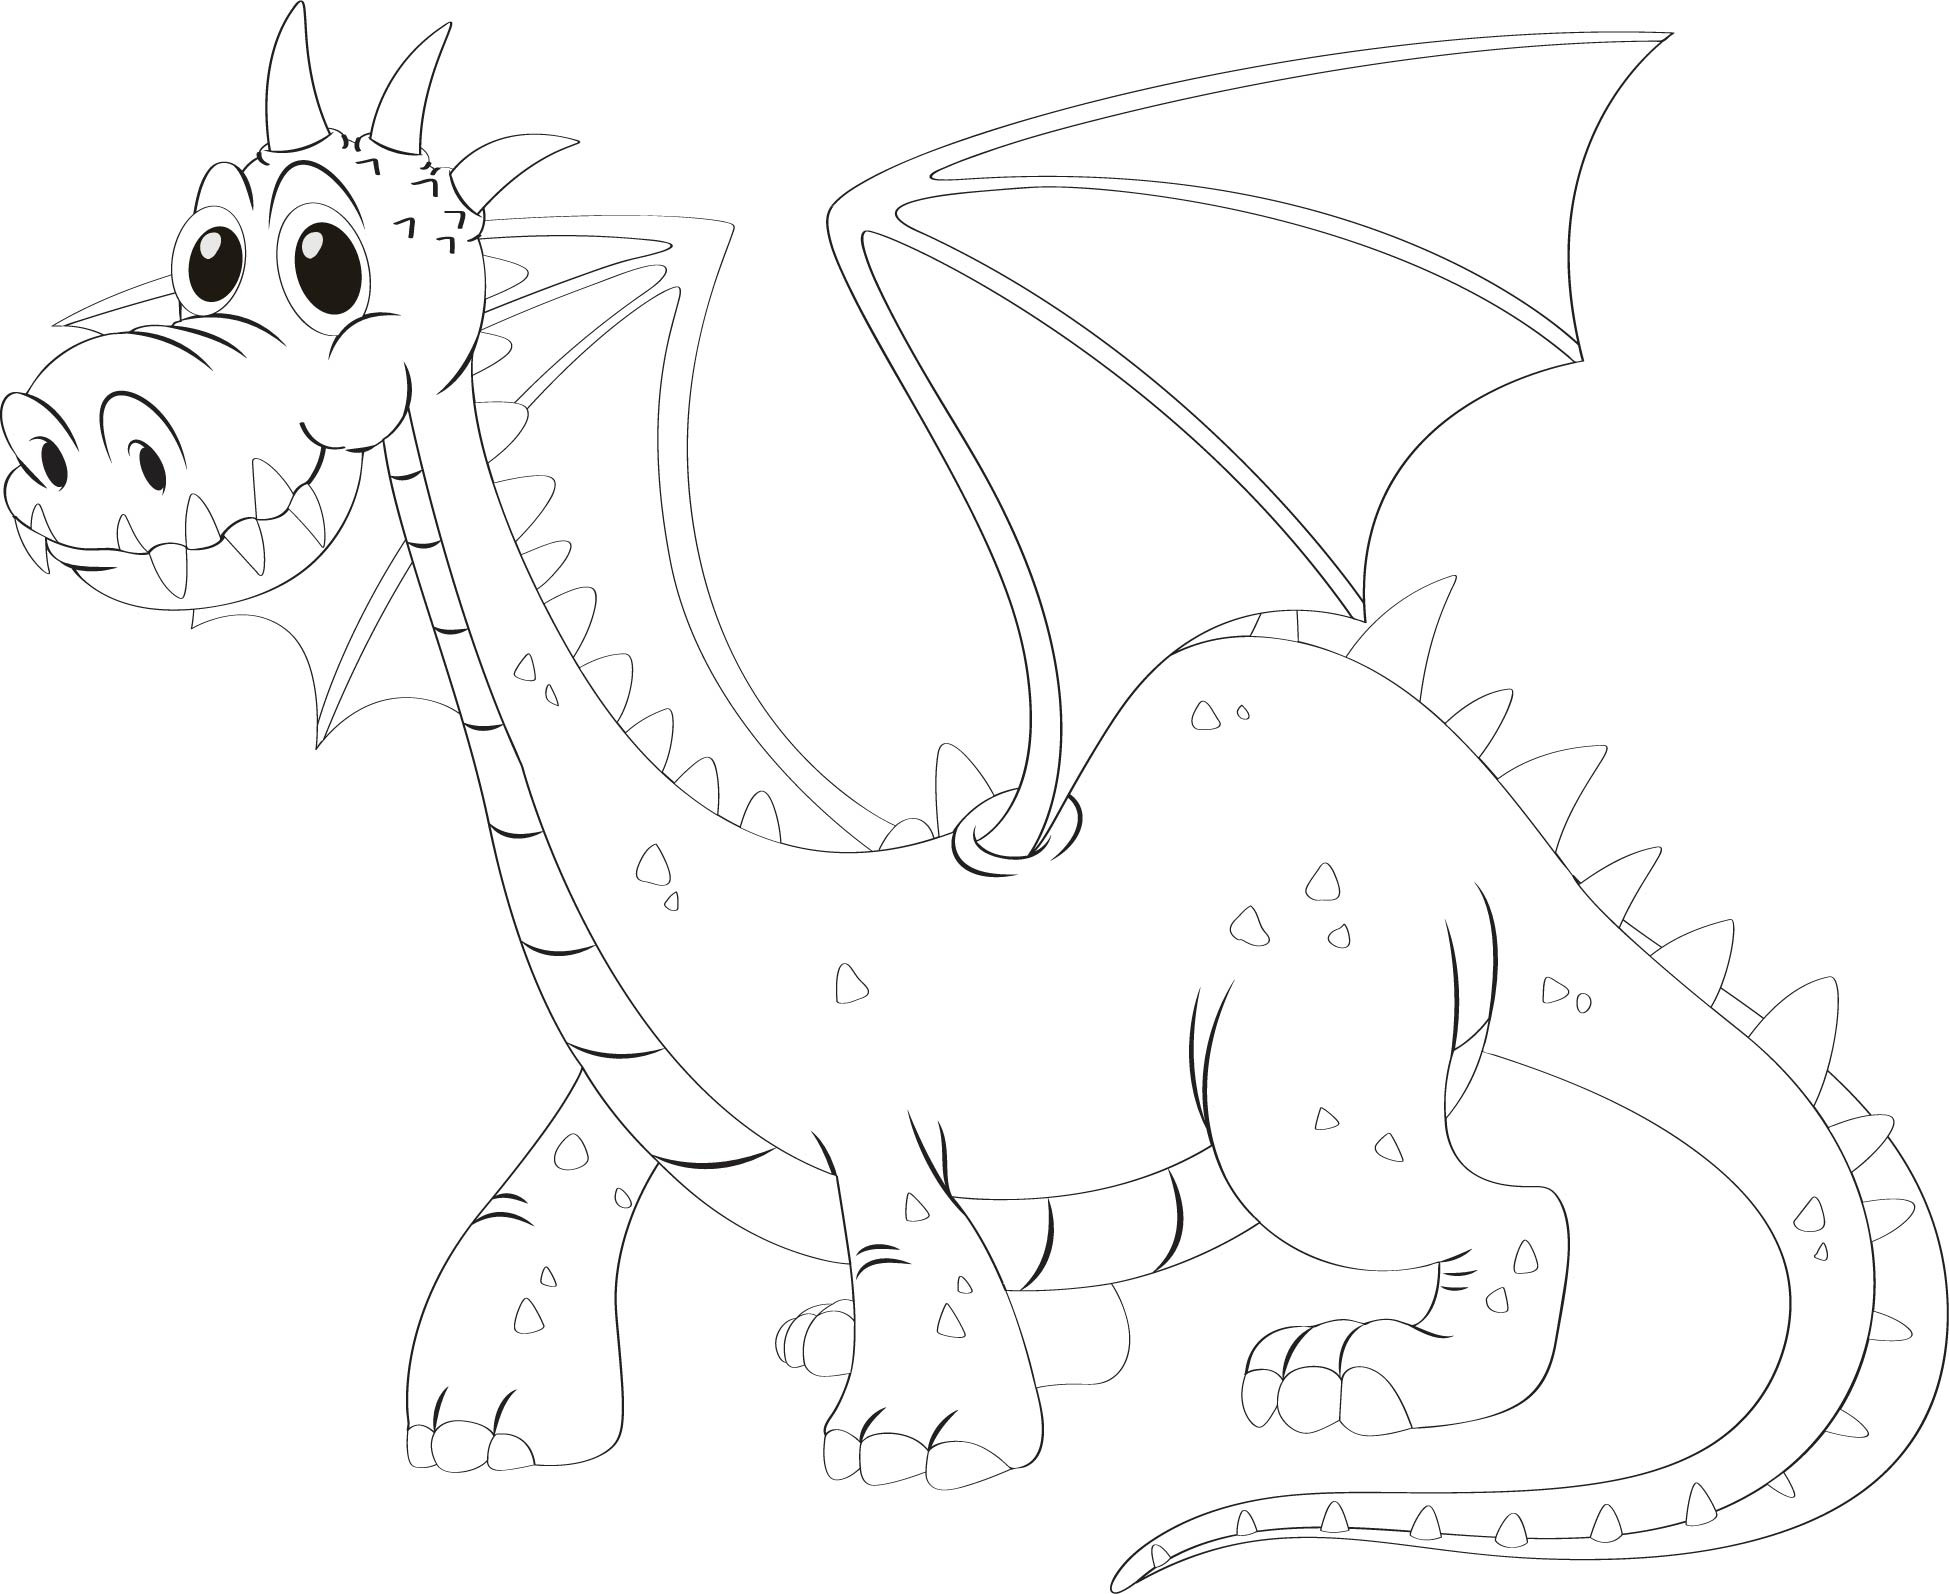 Раскраска для детей: большой дракон с крыльями и длинным хвостом